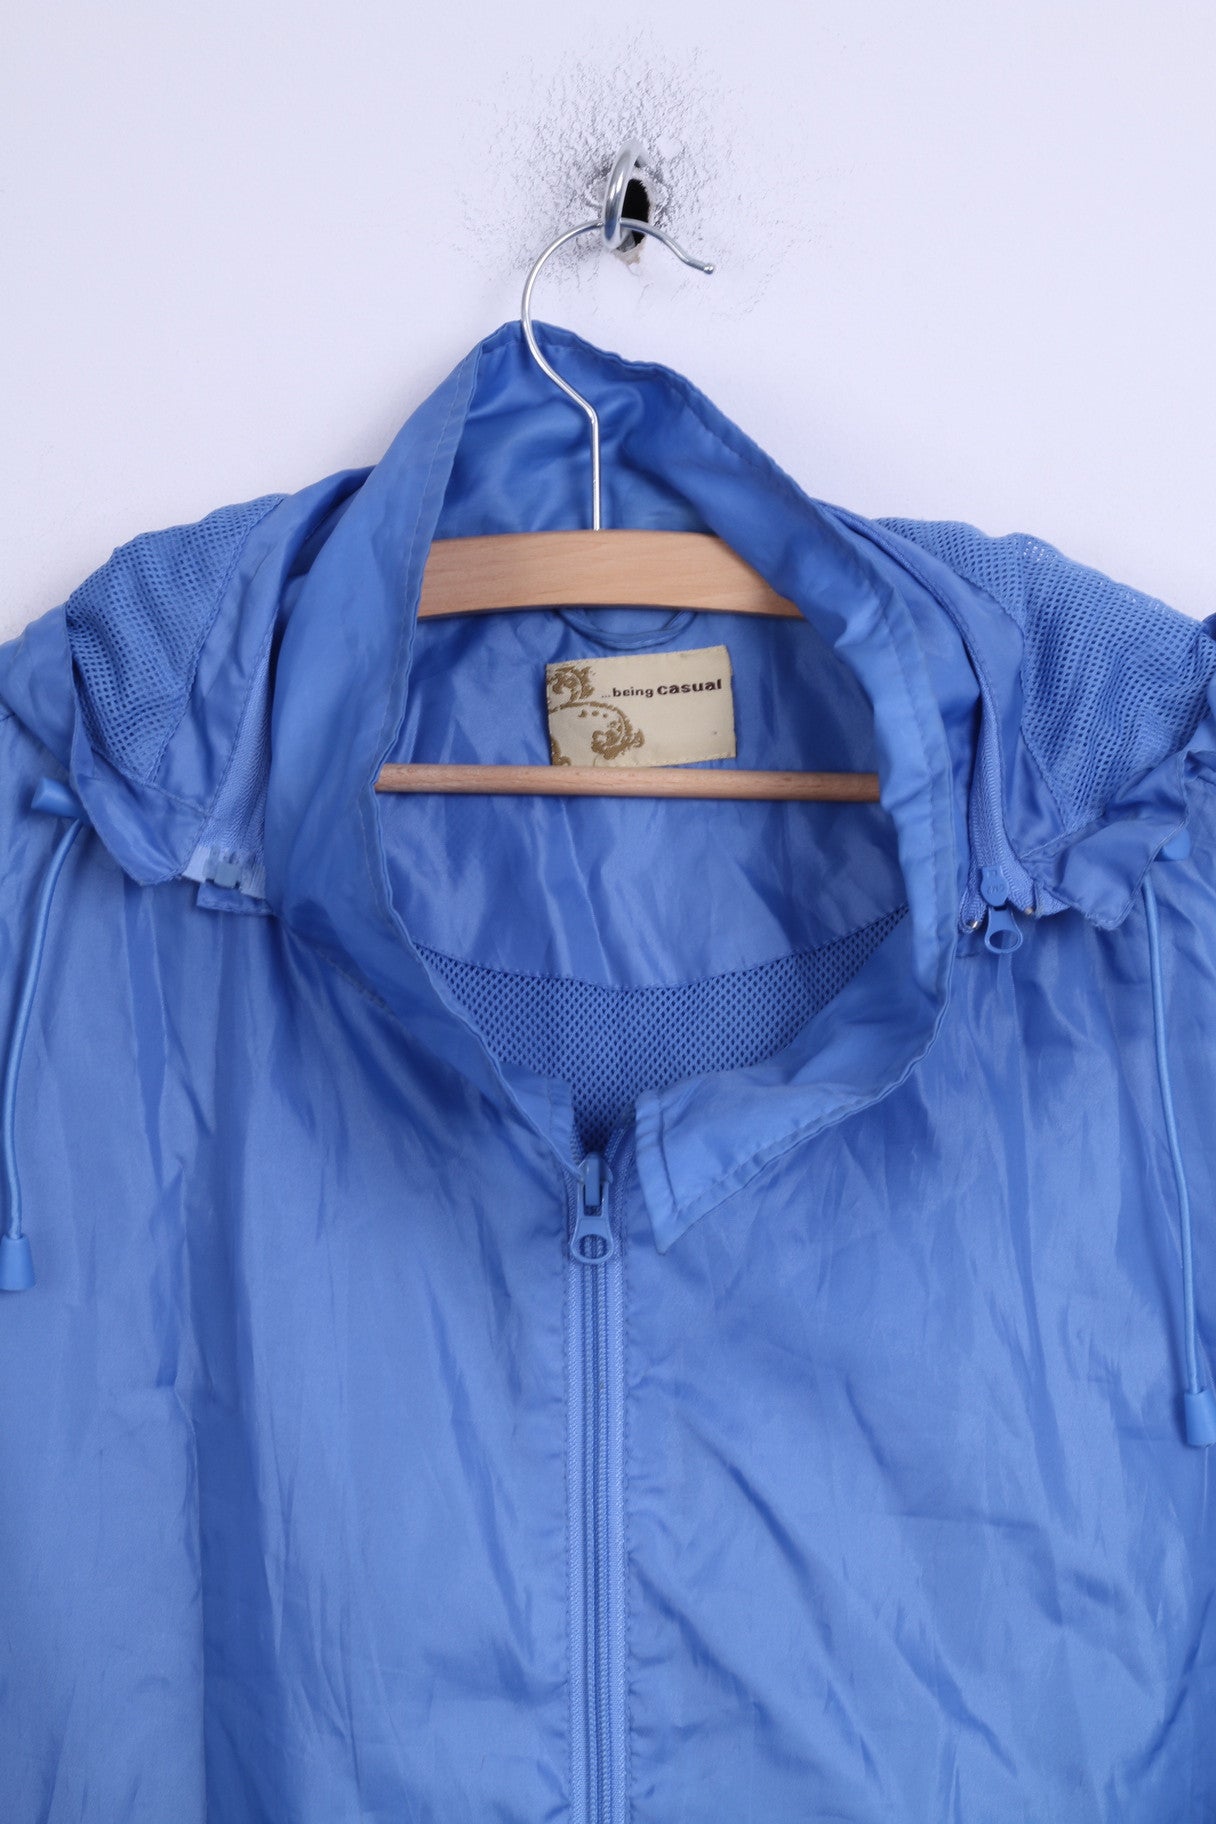 Being Casual Womens 26 XXL Jacket Blue Light Top Hood Full Zipper Two Pockets